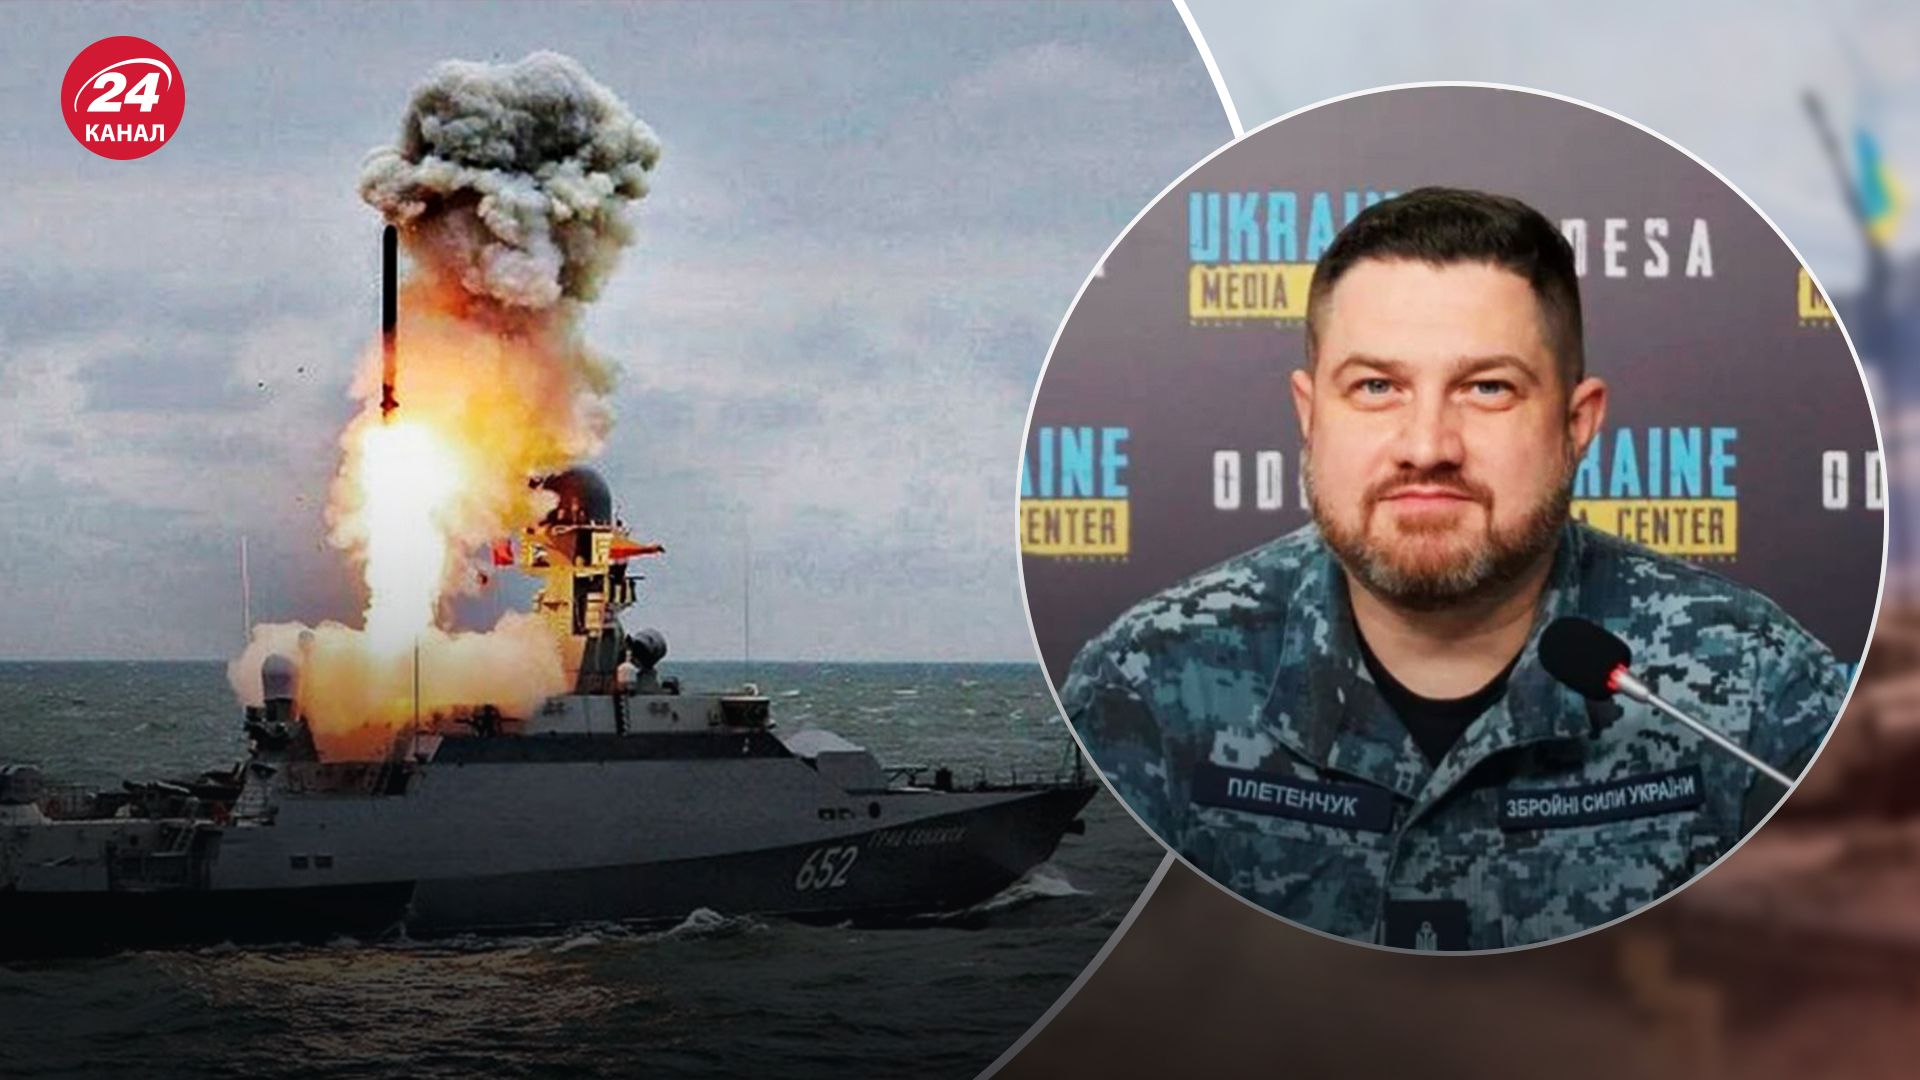 "Постоянно готовимся": в ВМС предупредили, что в ближайшее время Россия может осуществить атаку - 24 Канал